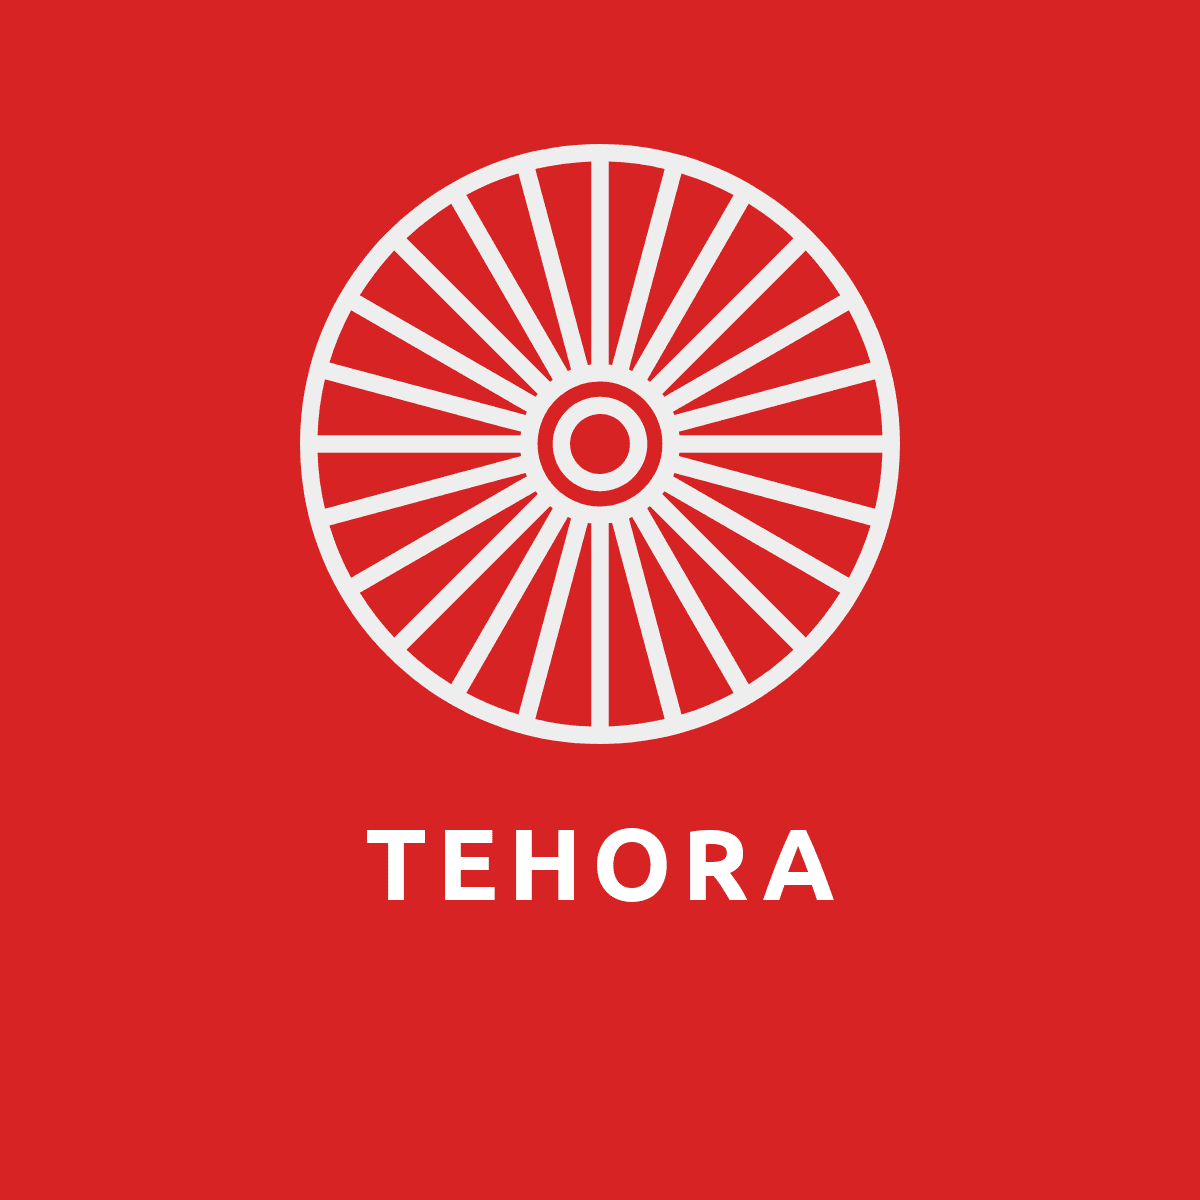 Tehora logo